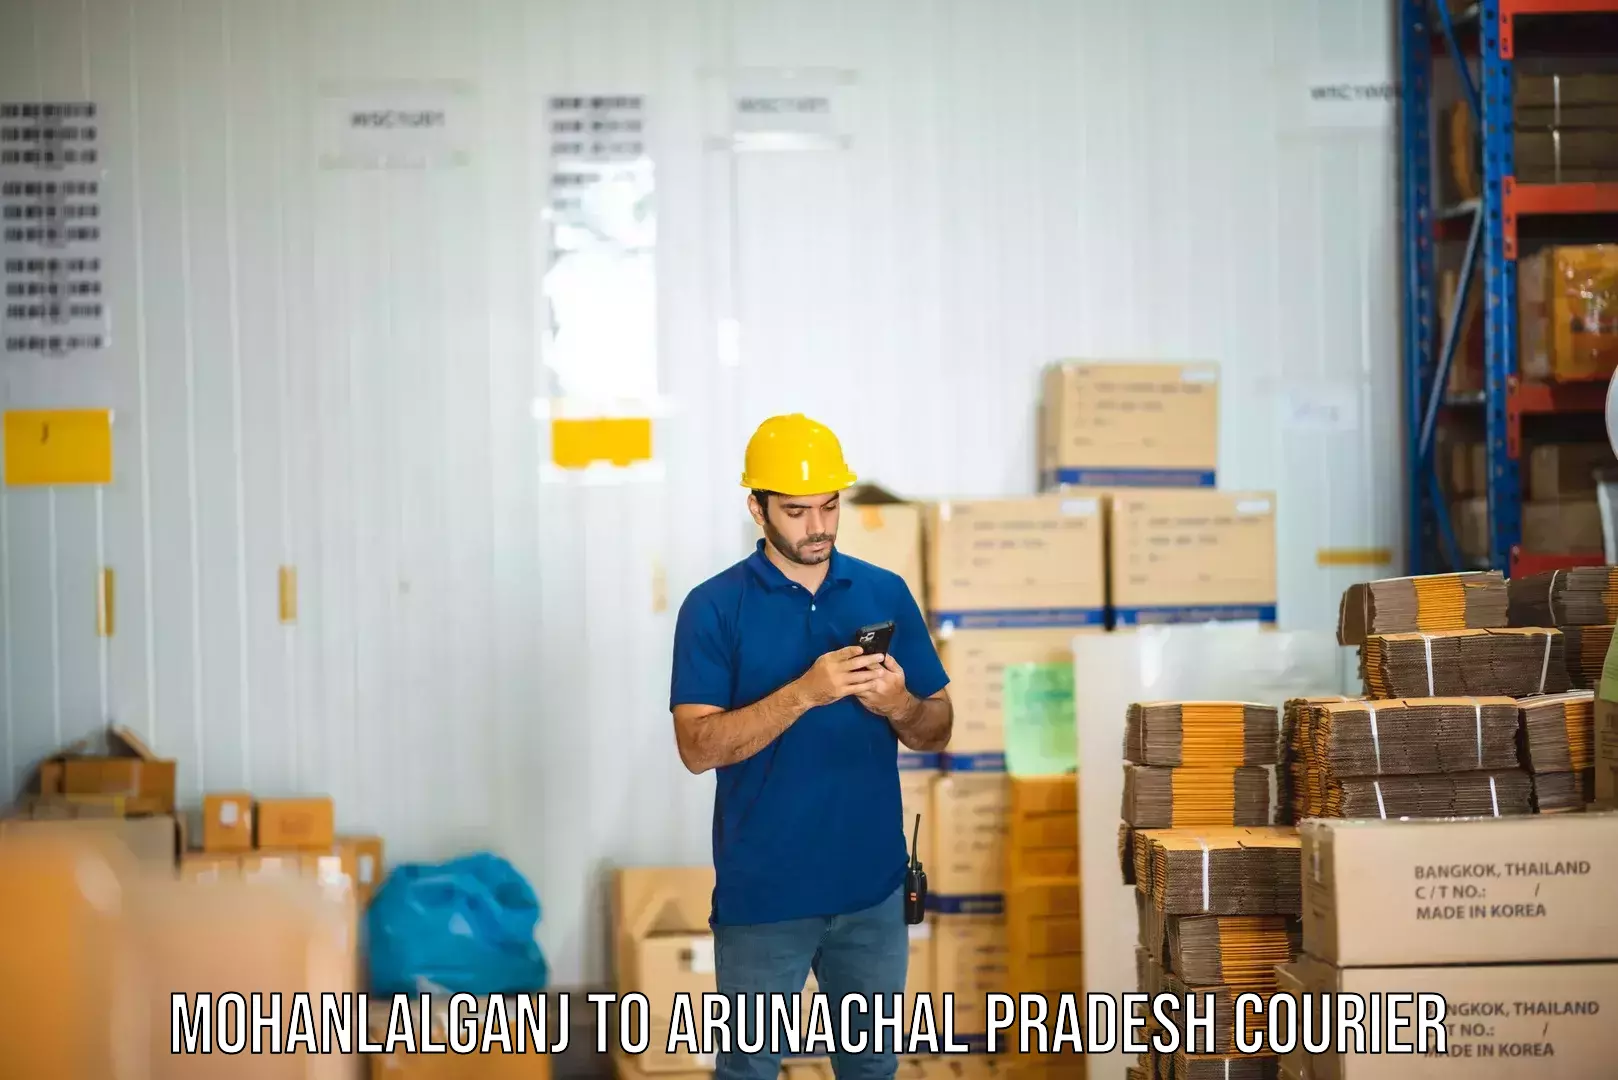 Fast-track shipping solutions Mohanlalganj to Itanagar